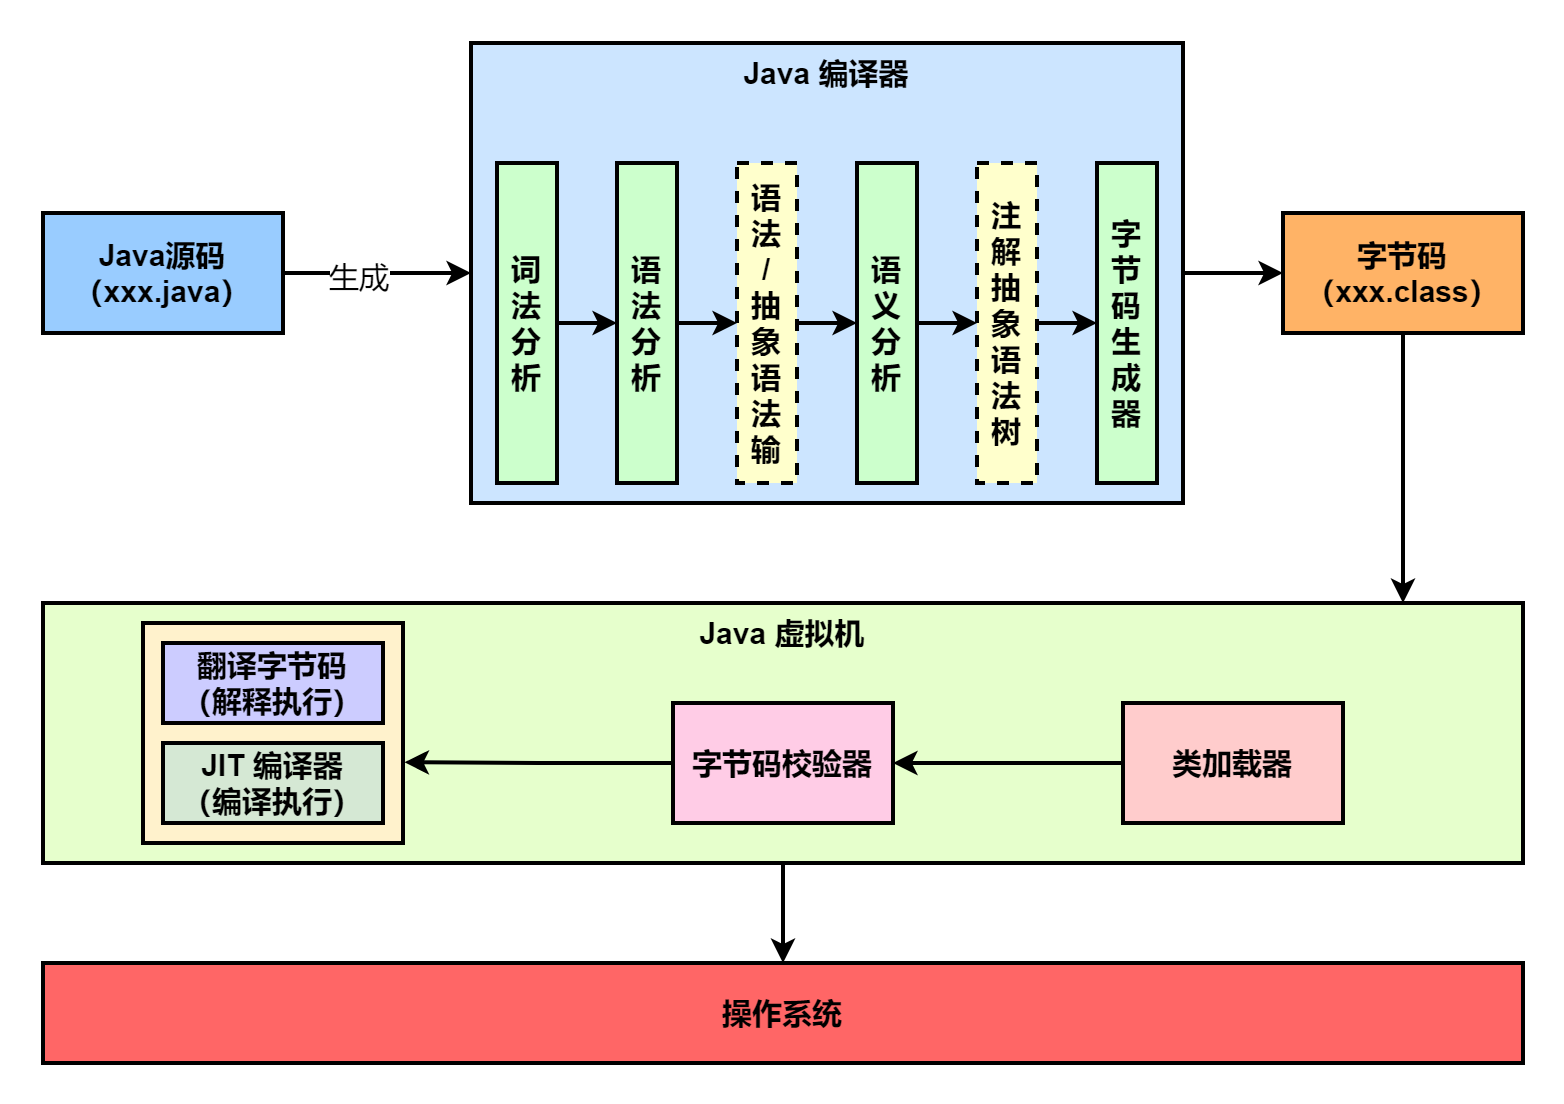 JVM学习 类加载子系统 